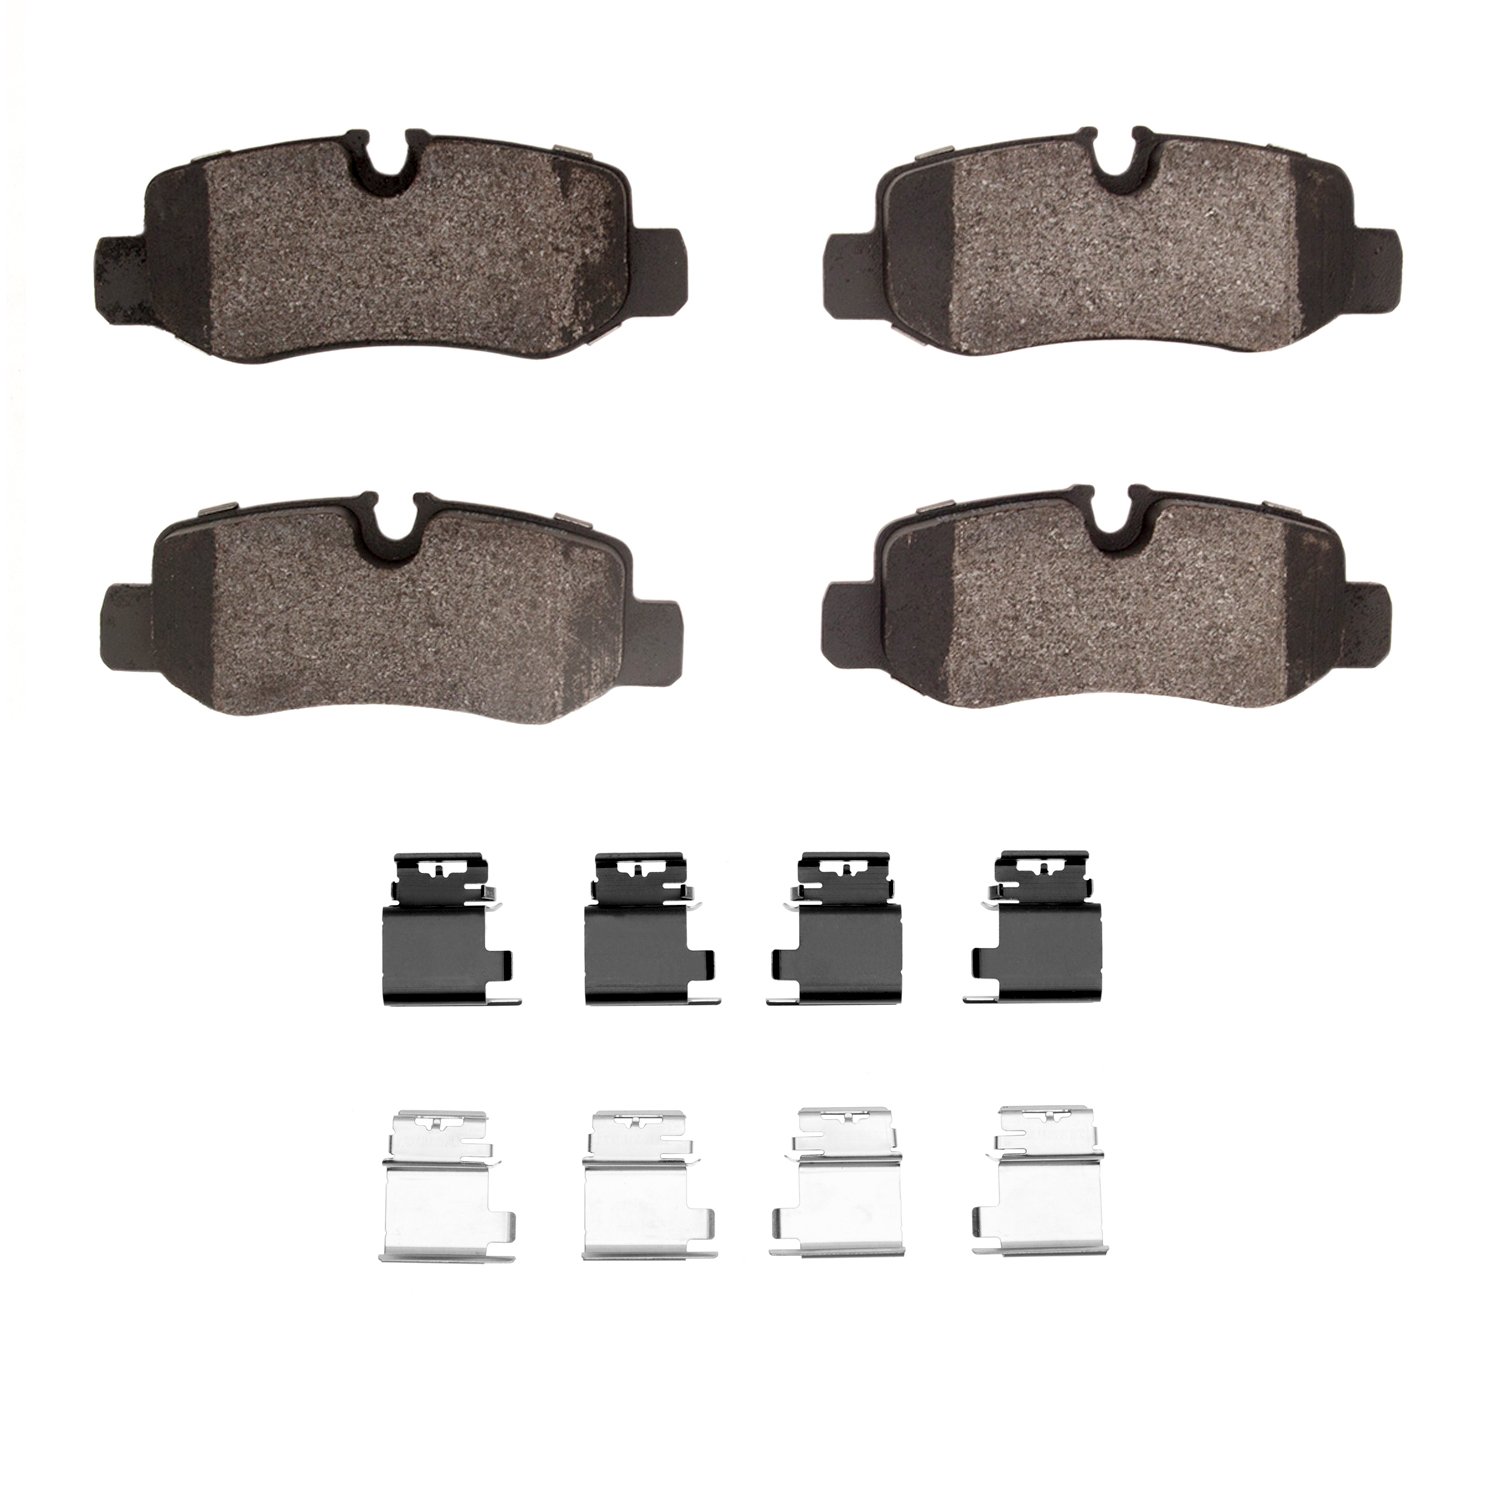 Euro Ceramic Brake Pads & Hardware Kit, Fits